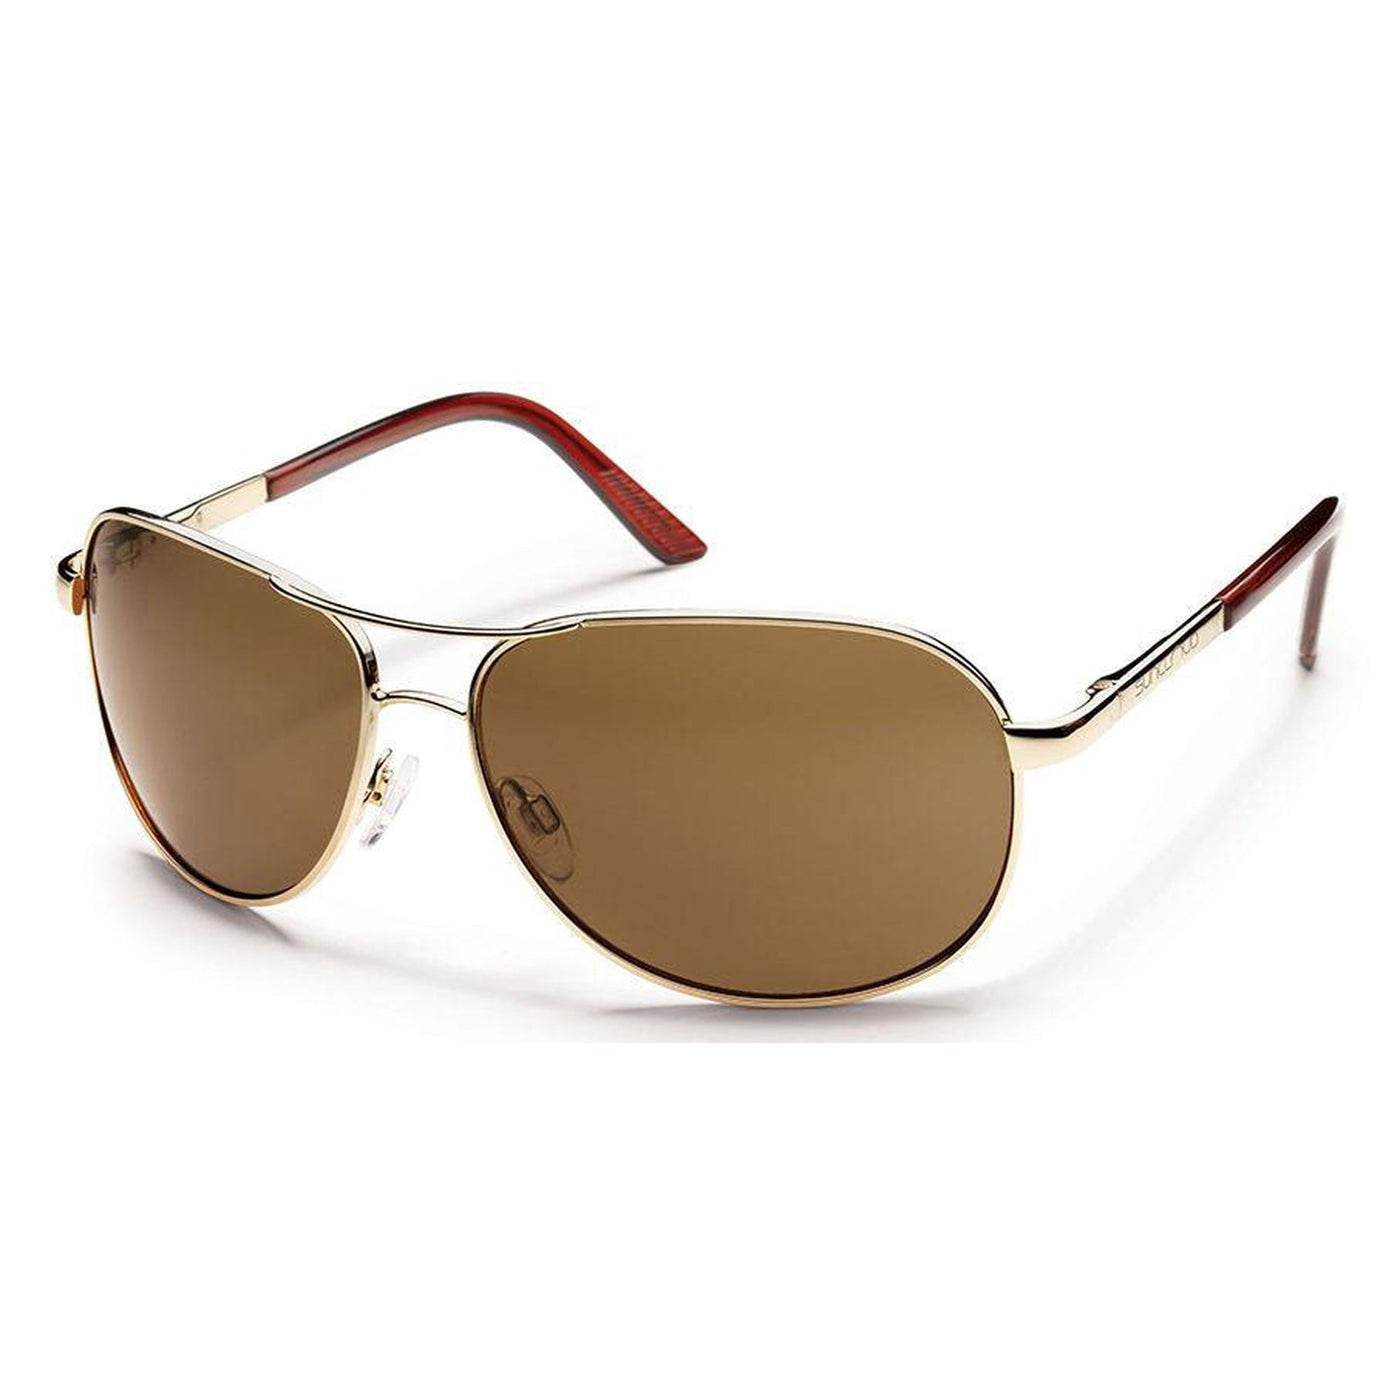 Suncloud Aviator-Polarized Sunglasses-Topline Eyewear